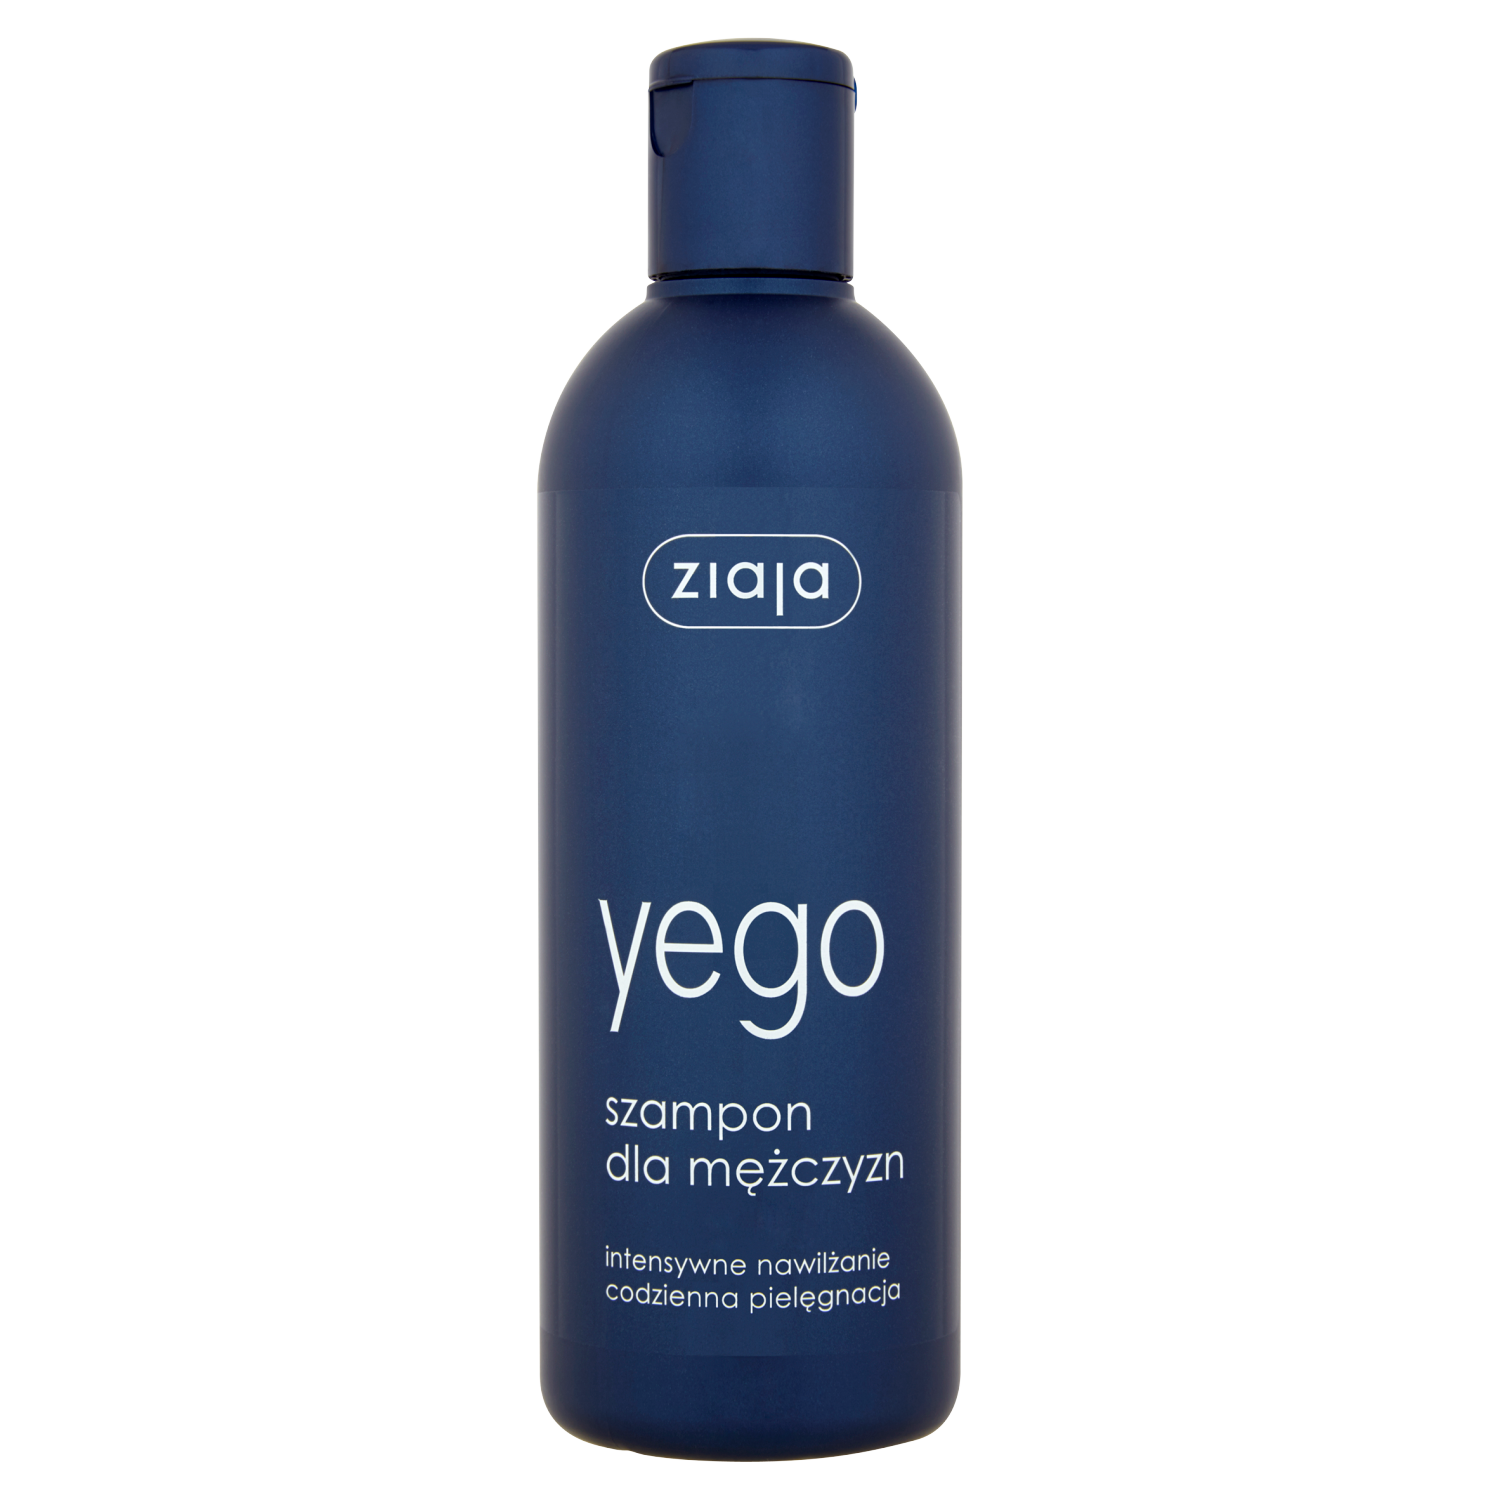 Ziaja Yego увлажняющий шампунь для волос для мужчин, 300 мл цена и фото